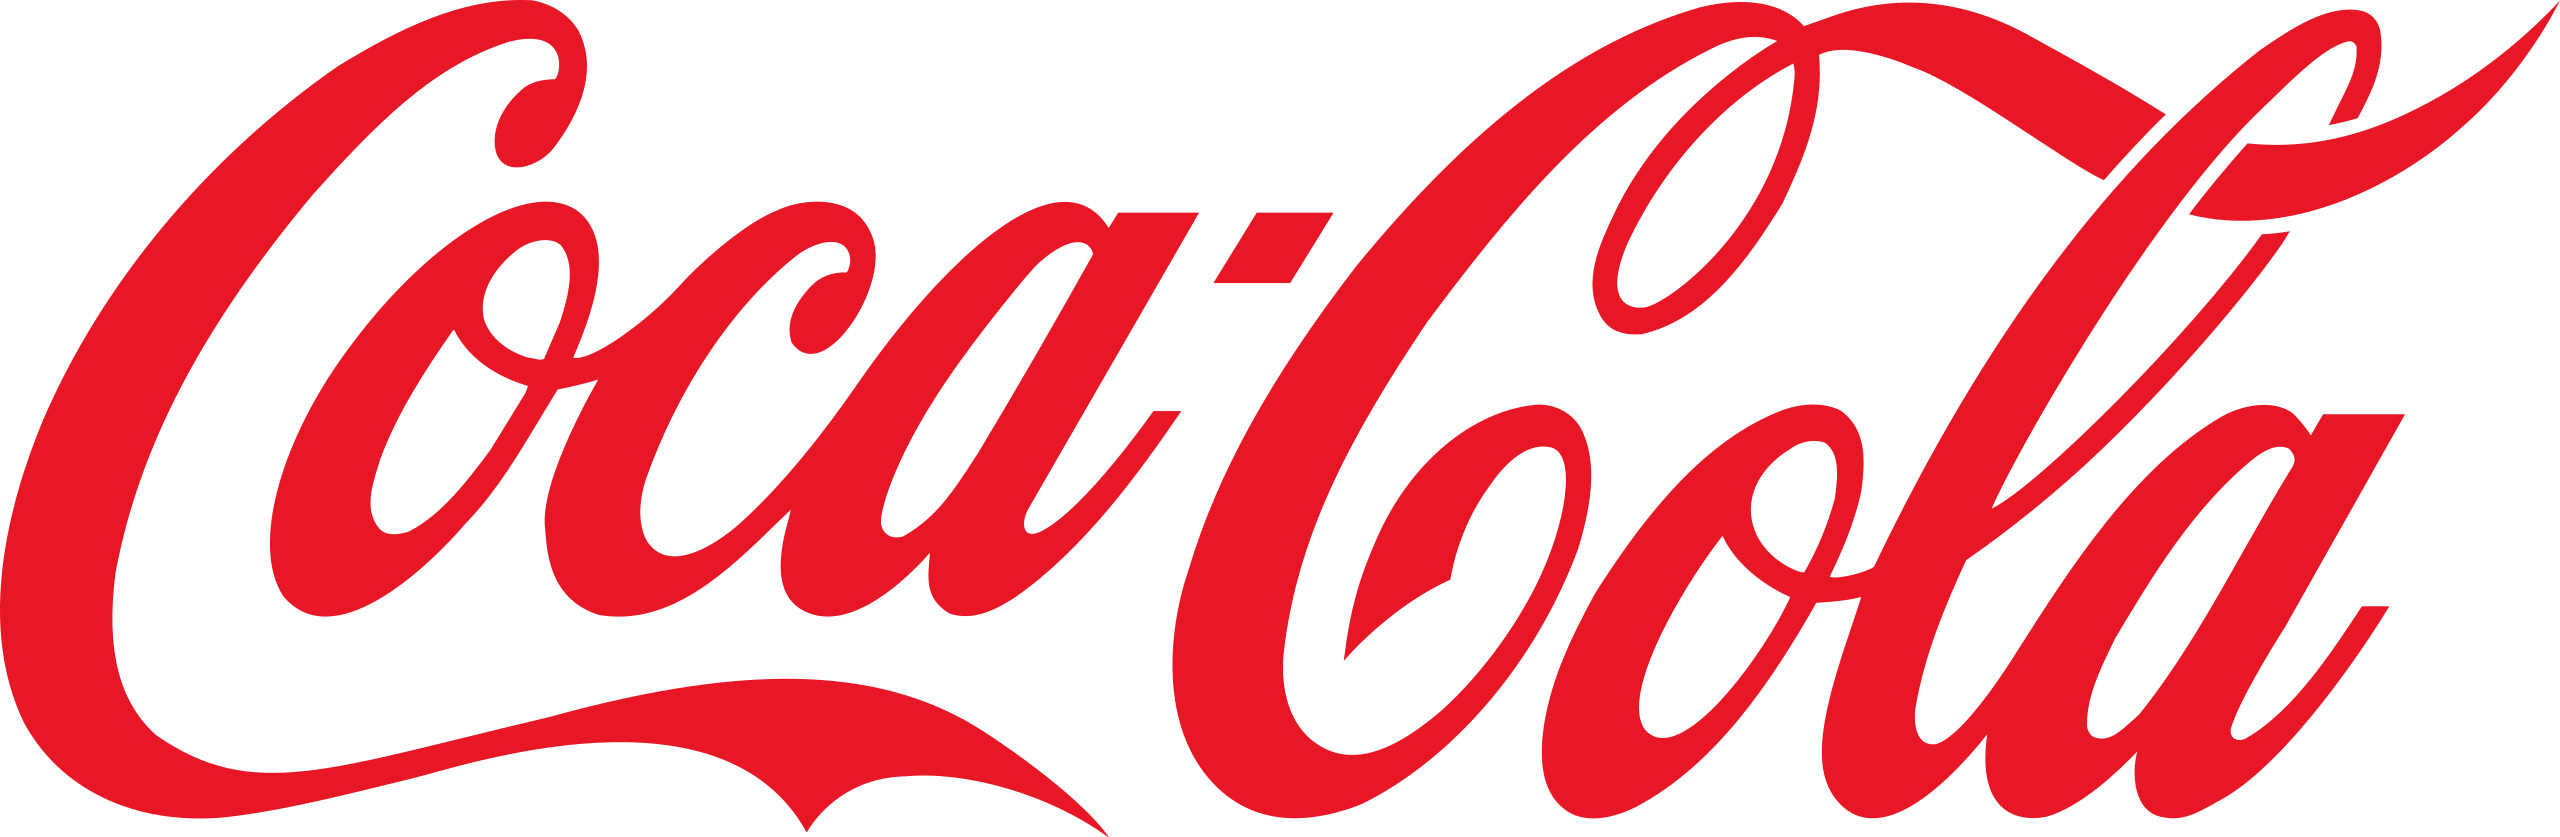 Coca-Cola 로고